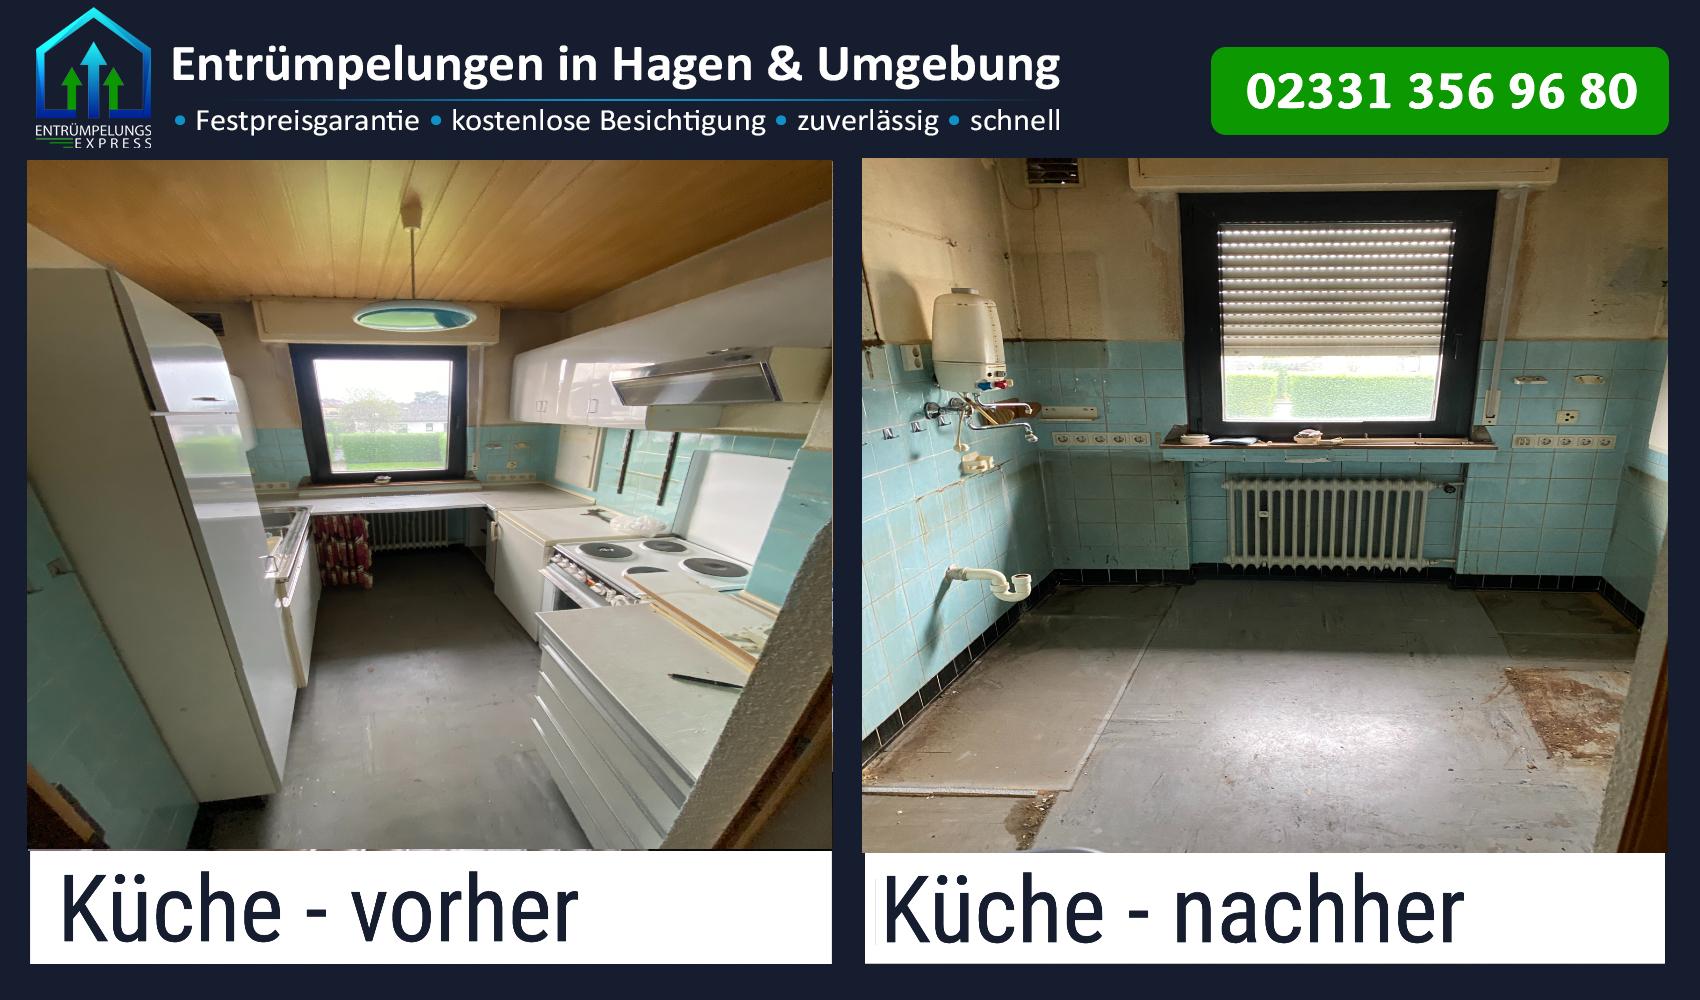 Entrümpelungs Express - Entrümpelungen, Wohnungsauflösungen und Haushaltsauflösungen, Wehringhauser Str. 64 in Hagen